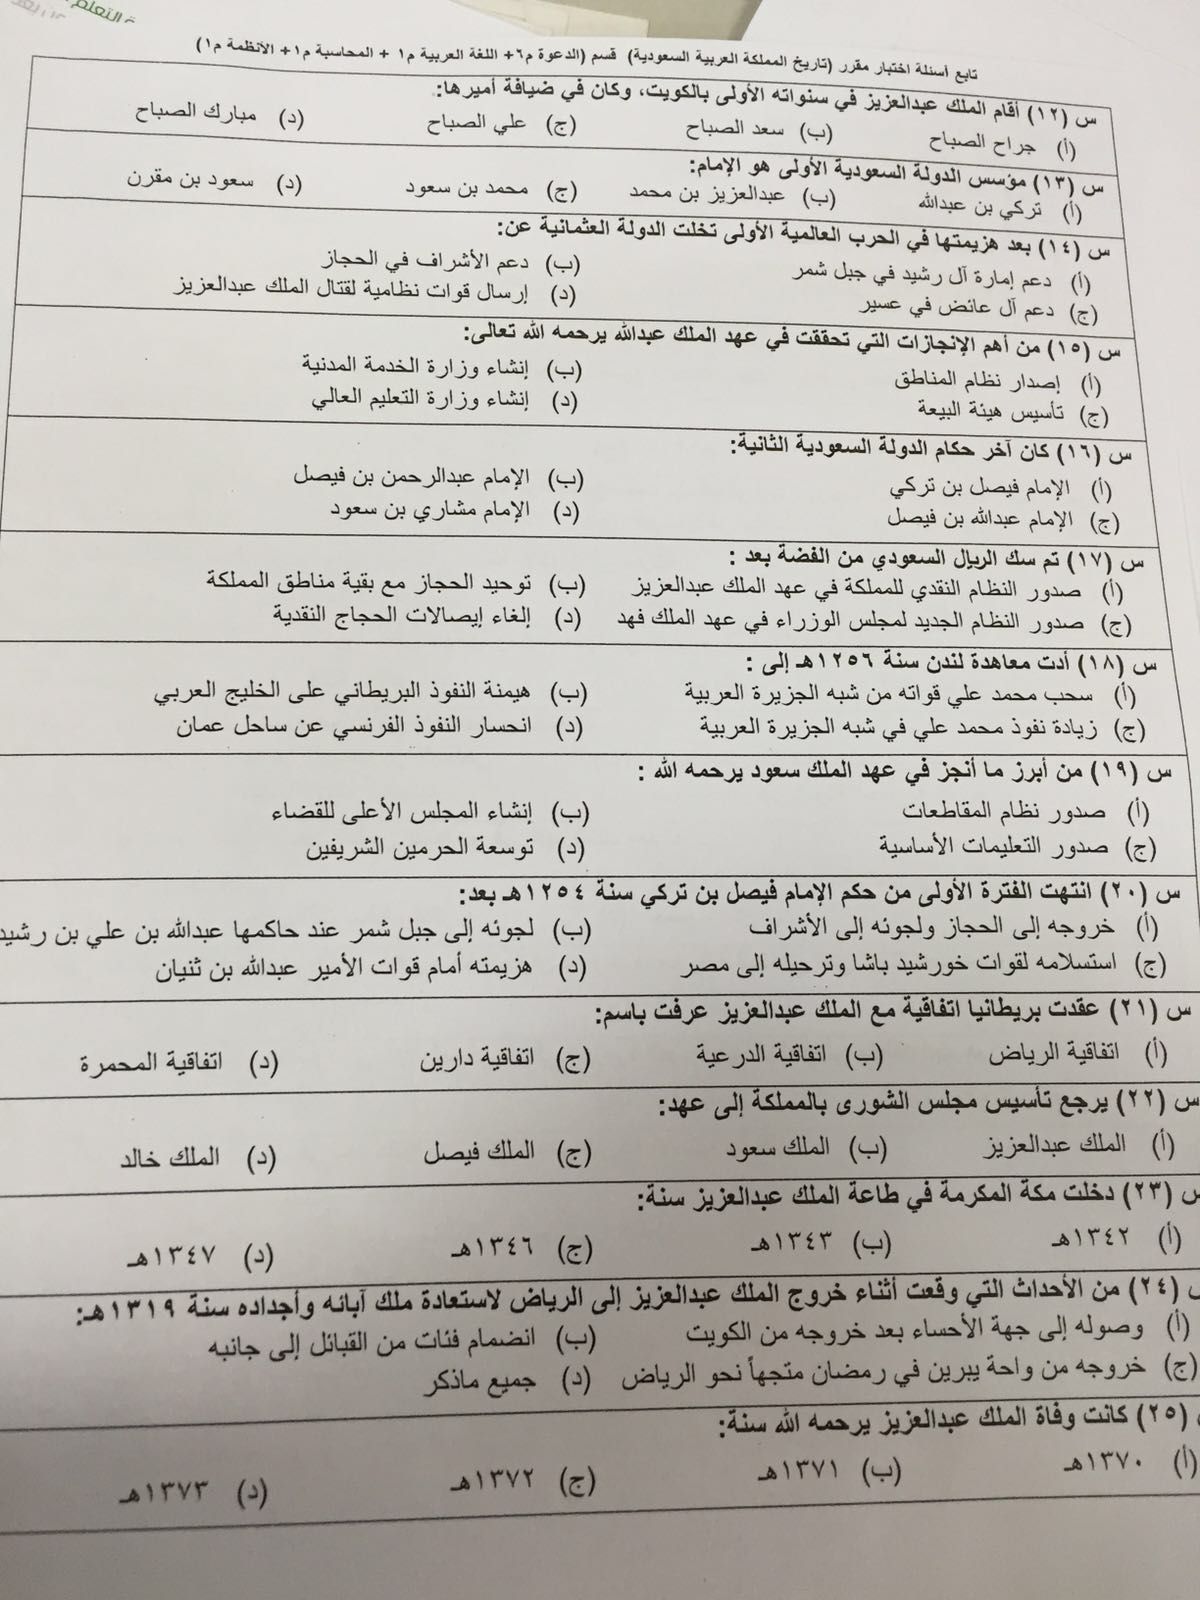 اسئلة اختبار تاريخ المملكة العربية السعودية ترخ 102 الفصل الأول 1437هـ المستوى الأول تاريخ المملكة العربية السعودية ترخ 102 جامعة الامام محمد بن سعود الاسلامية